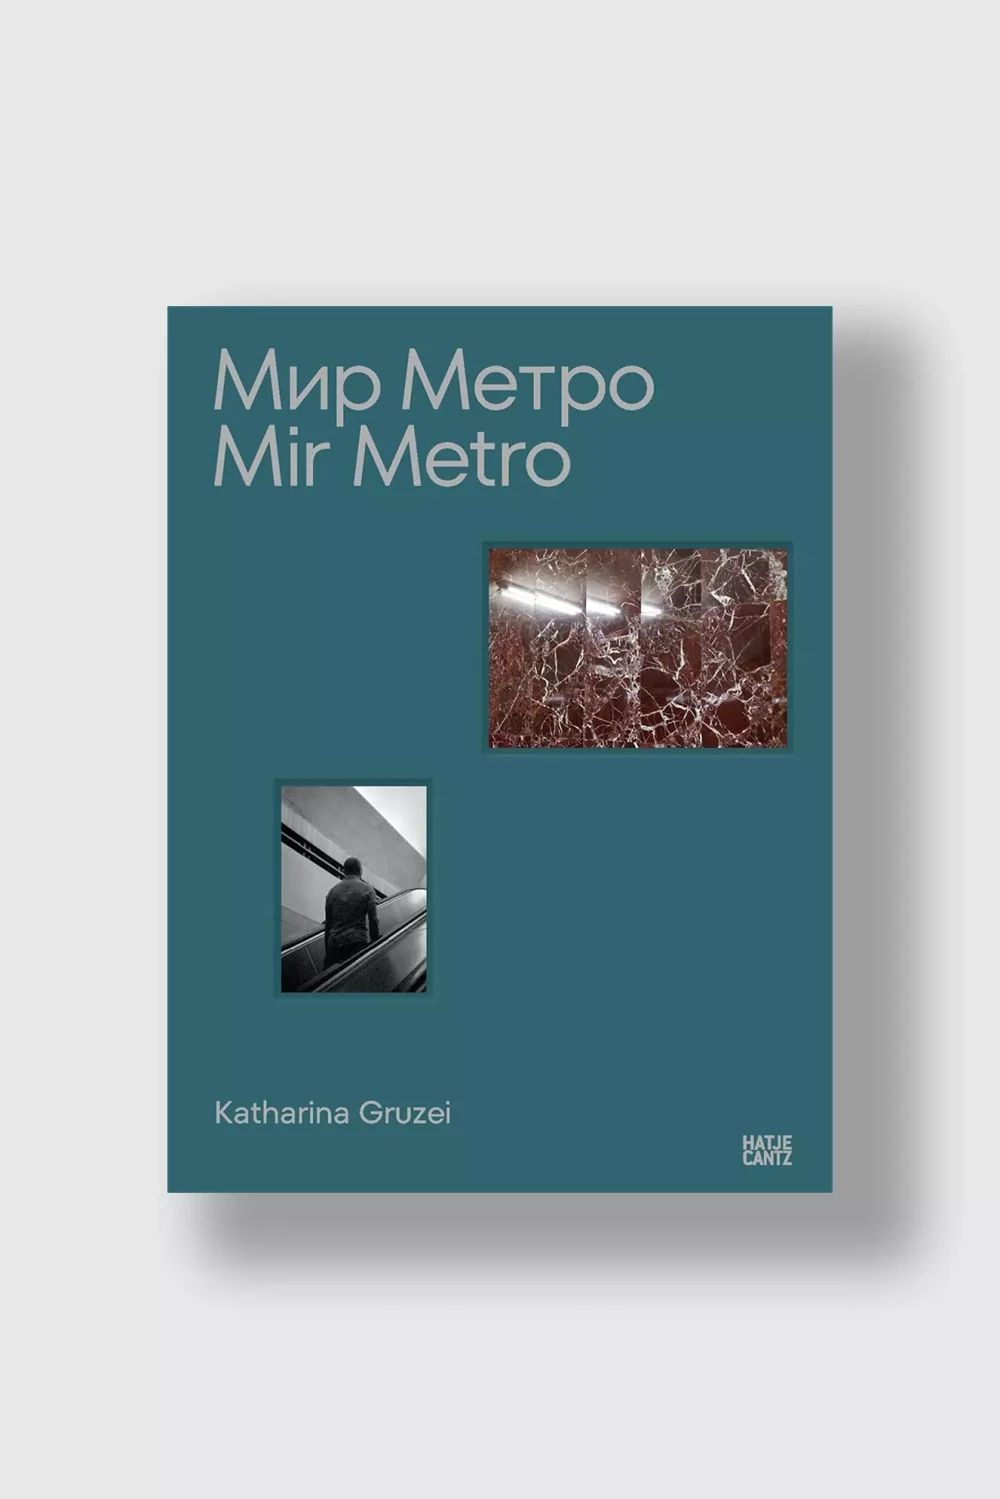 Книга Мир Метро. Mir Metro Katharina Gruzei (Hatje Cantz) (One size)